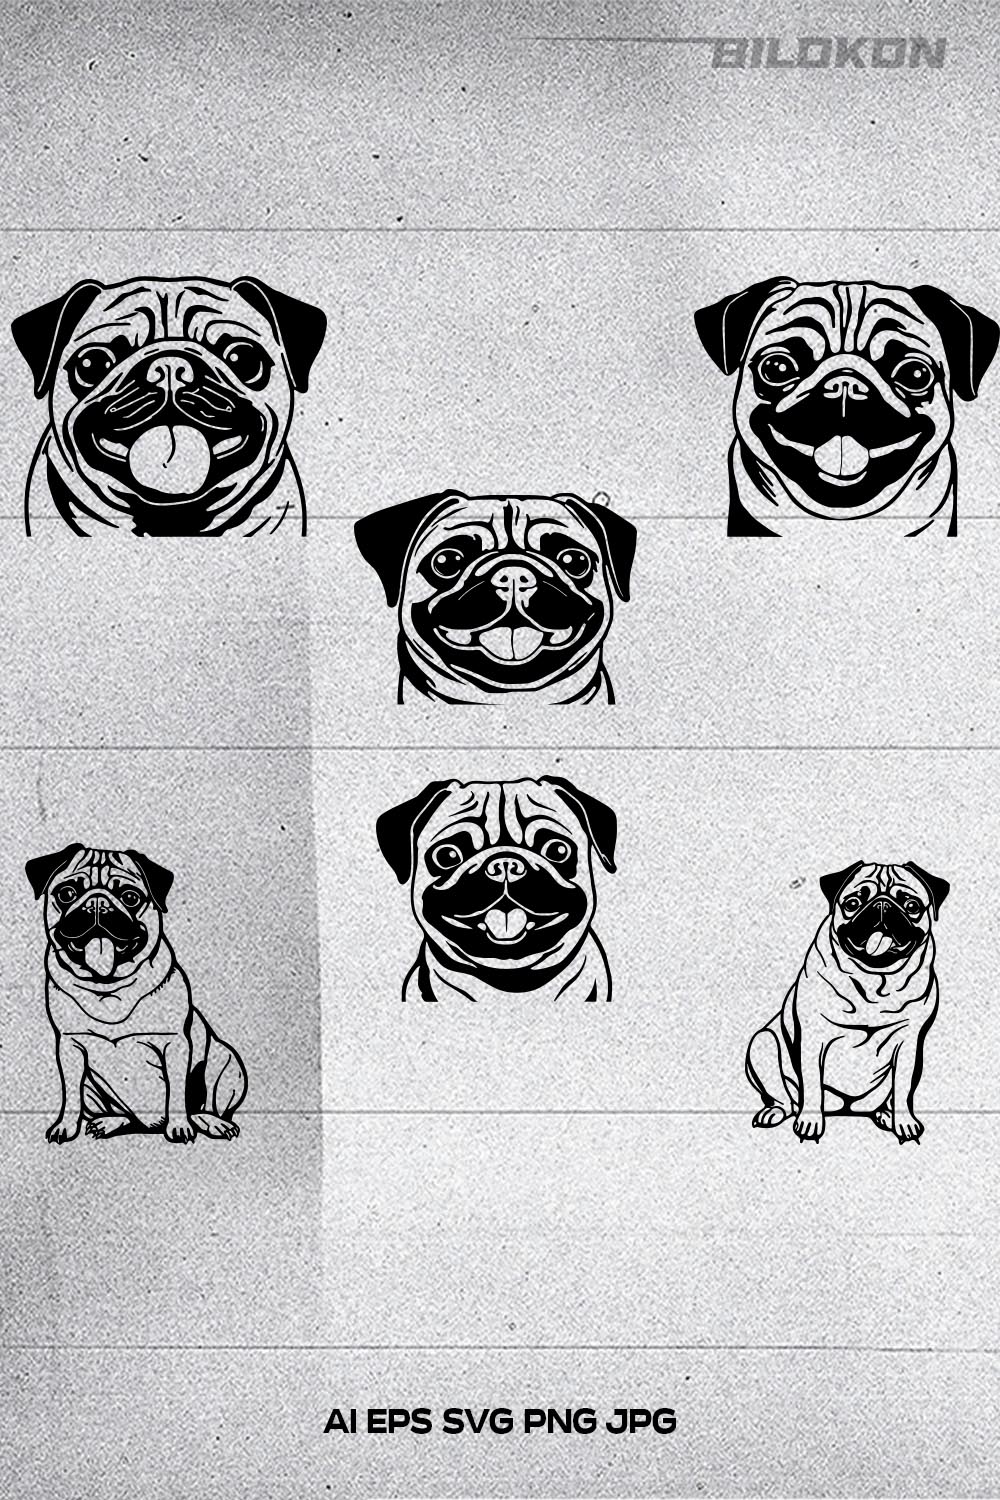 Pug dog head, SVG, Vector, Illustration, SVG Bundle pinterest preview image.